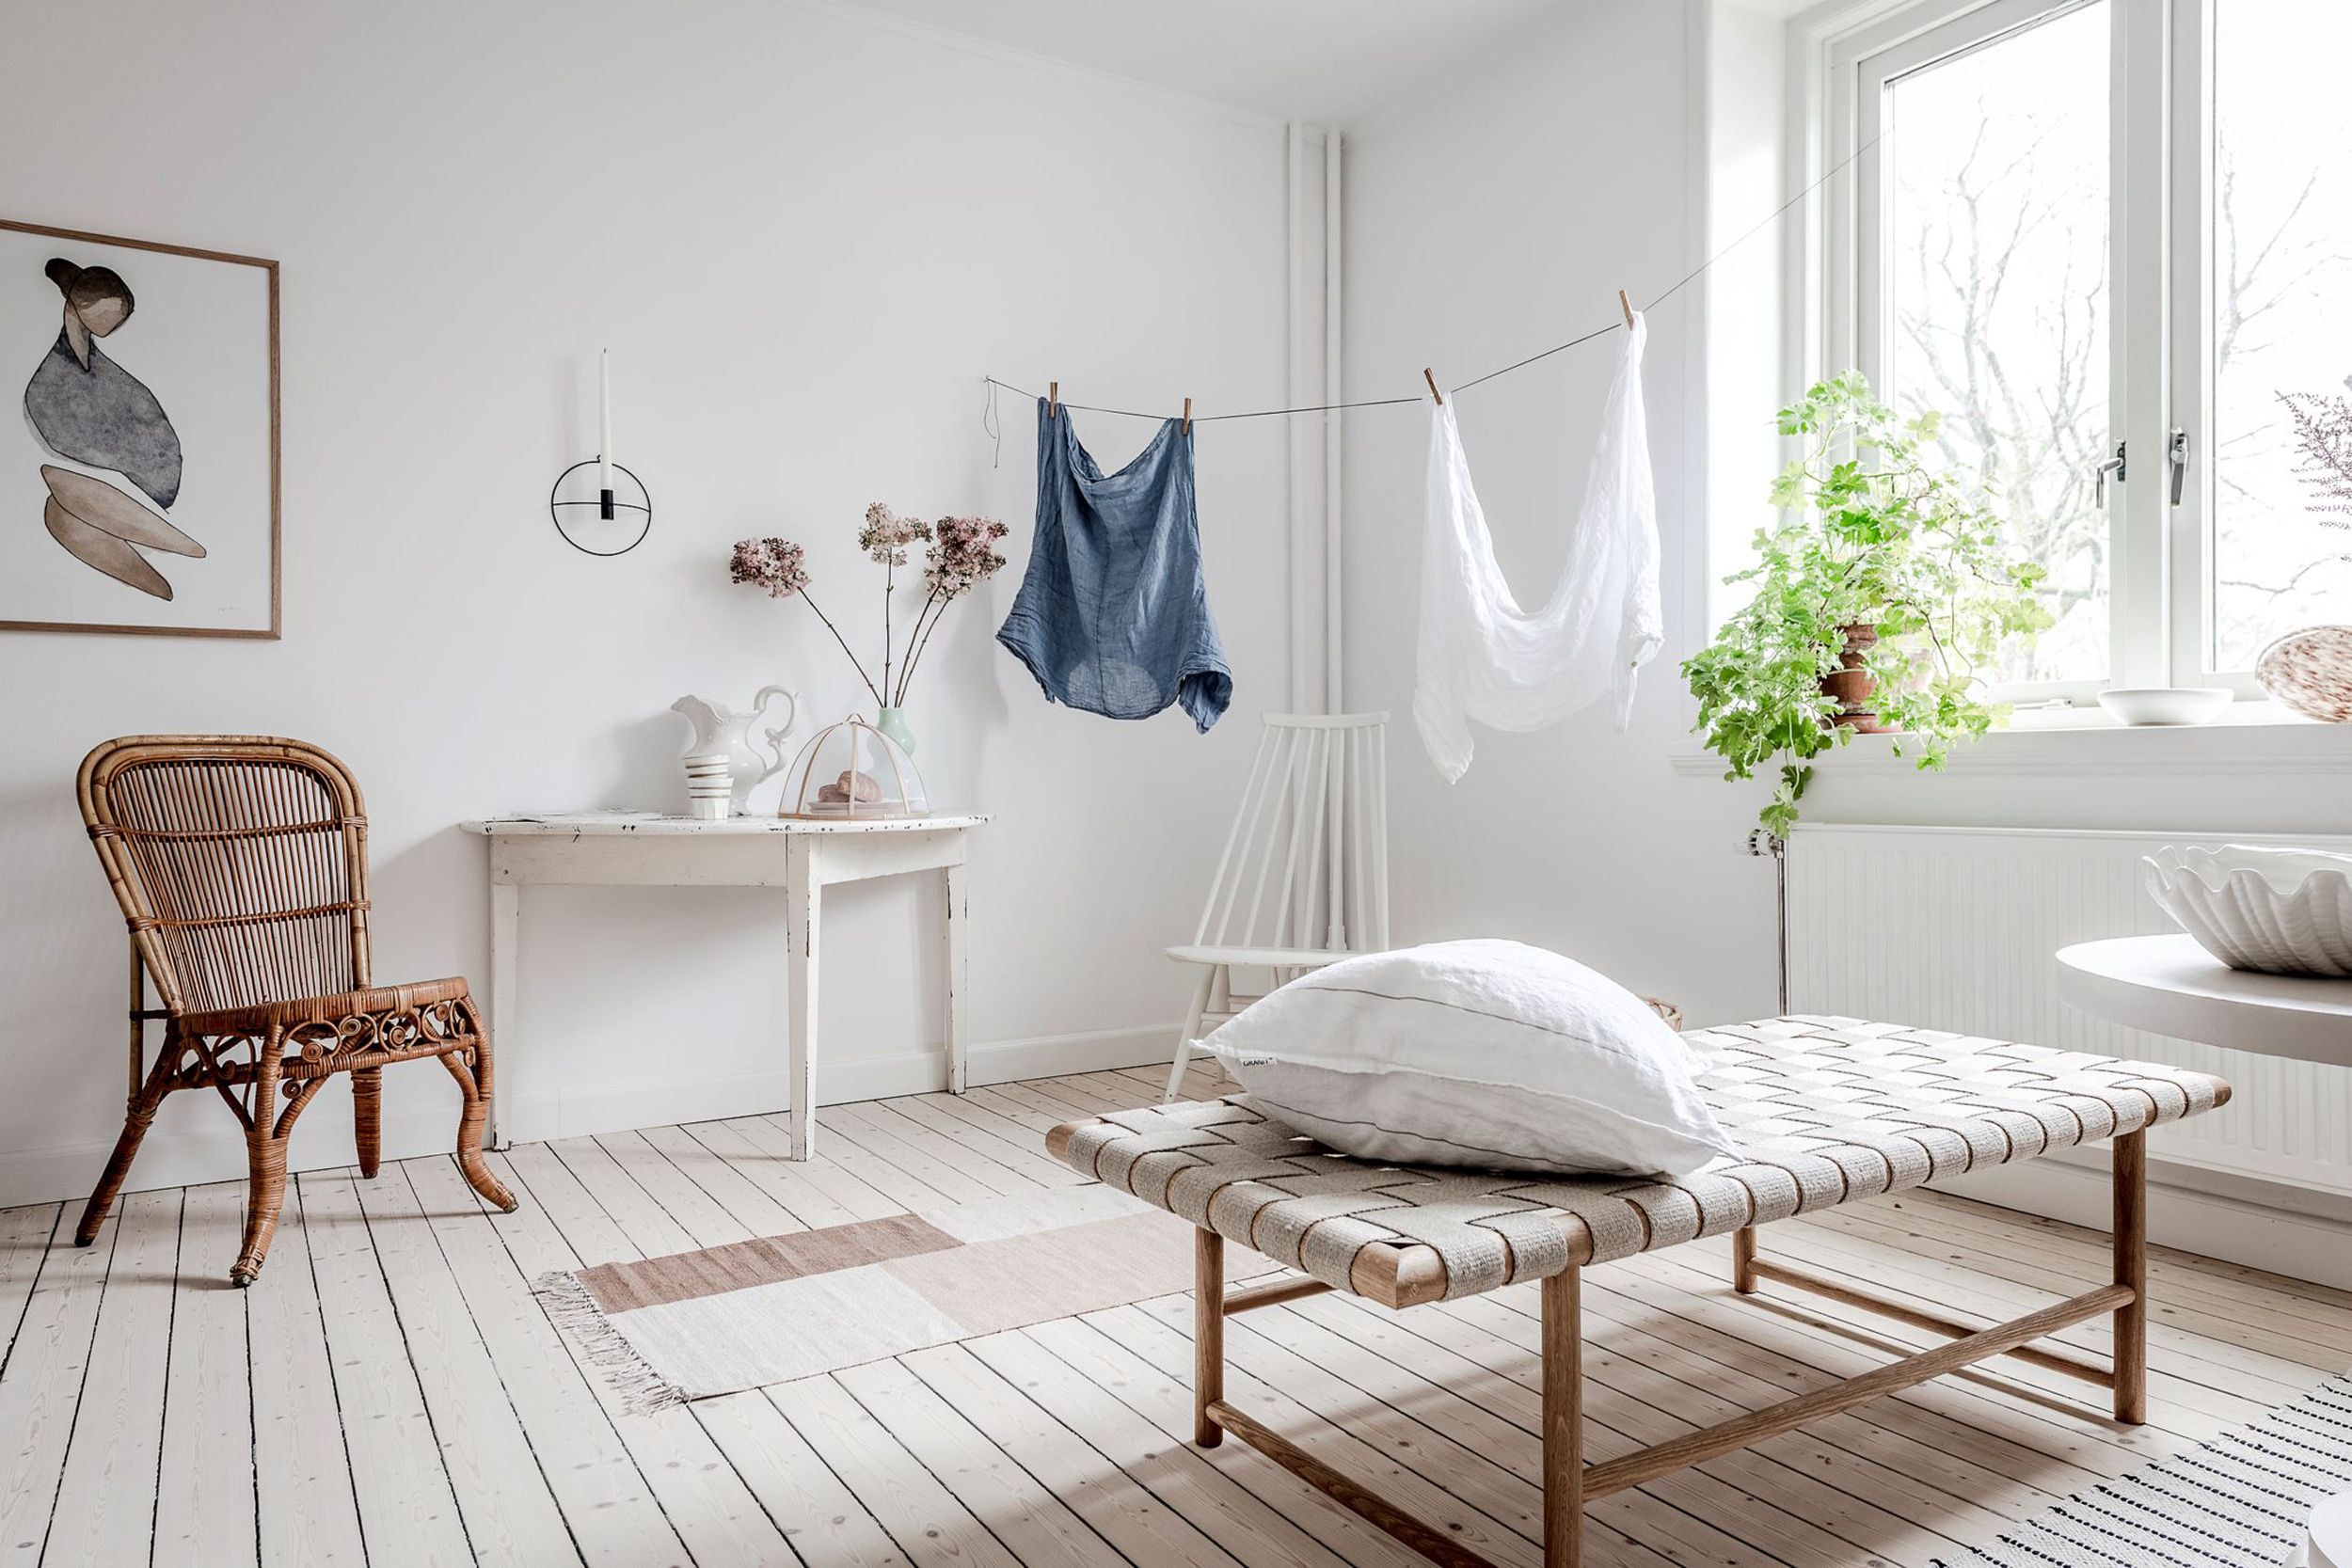 Un estudio de estilo nórdico y vintage - Casas pequeñas